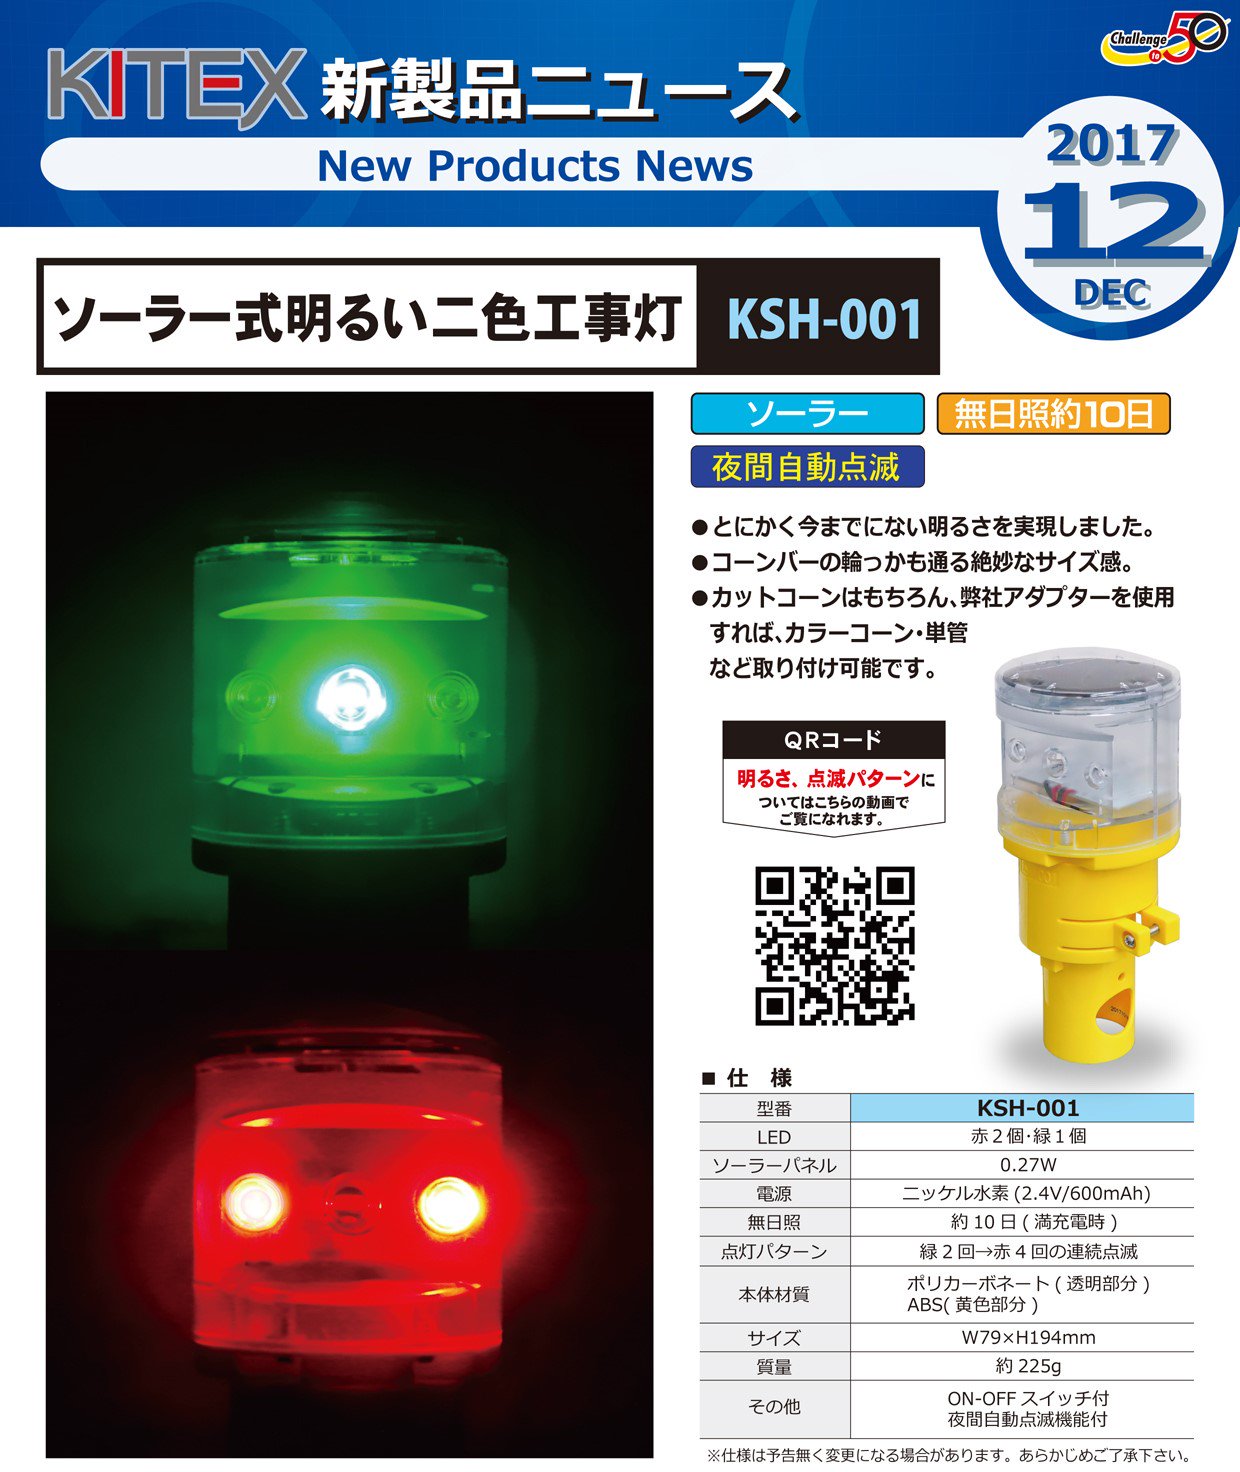 キタムラ産業 KITEX ソーラー式明るい二色工事灯 KSH-001